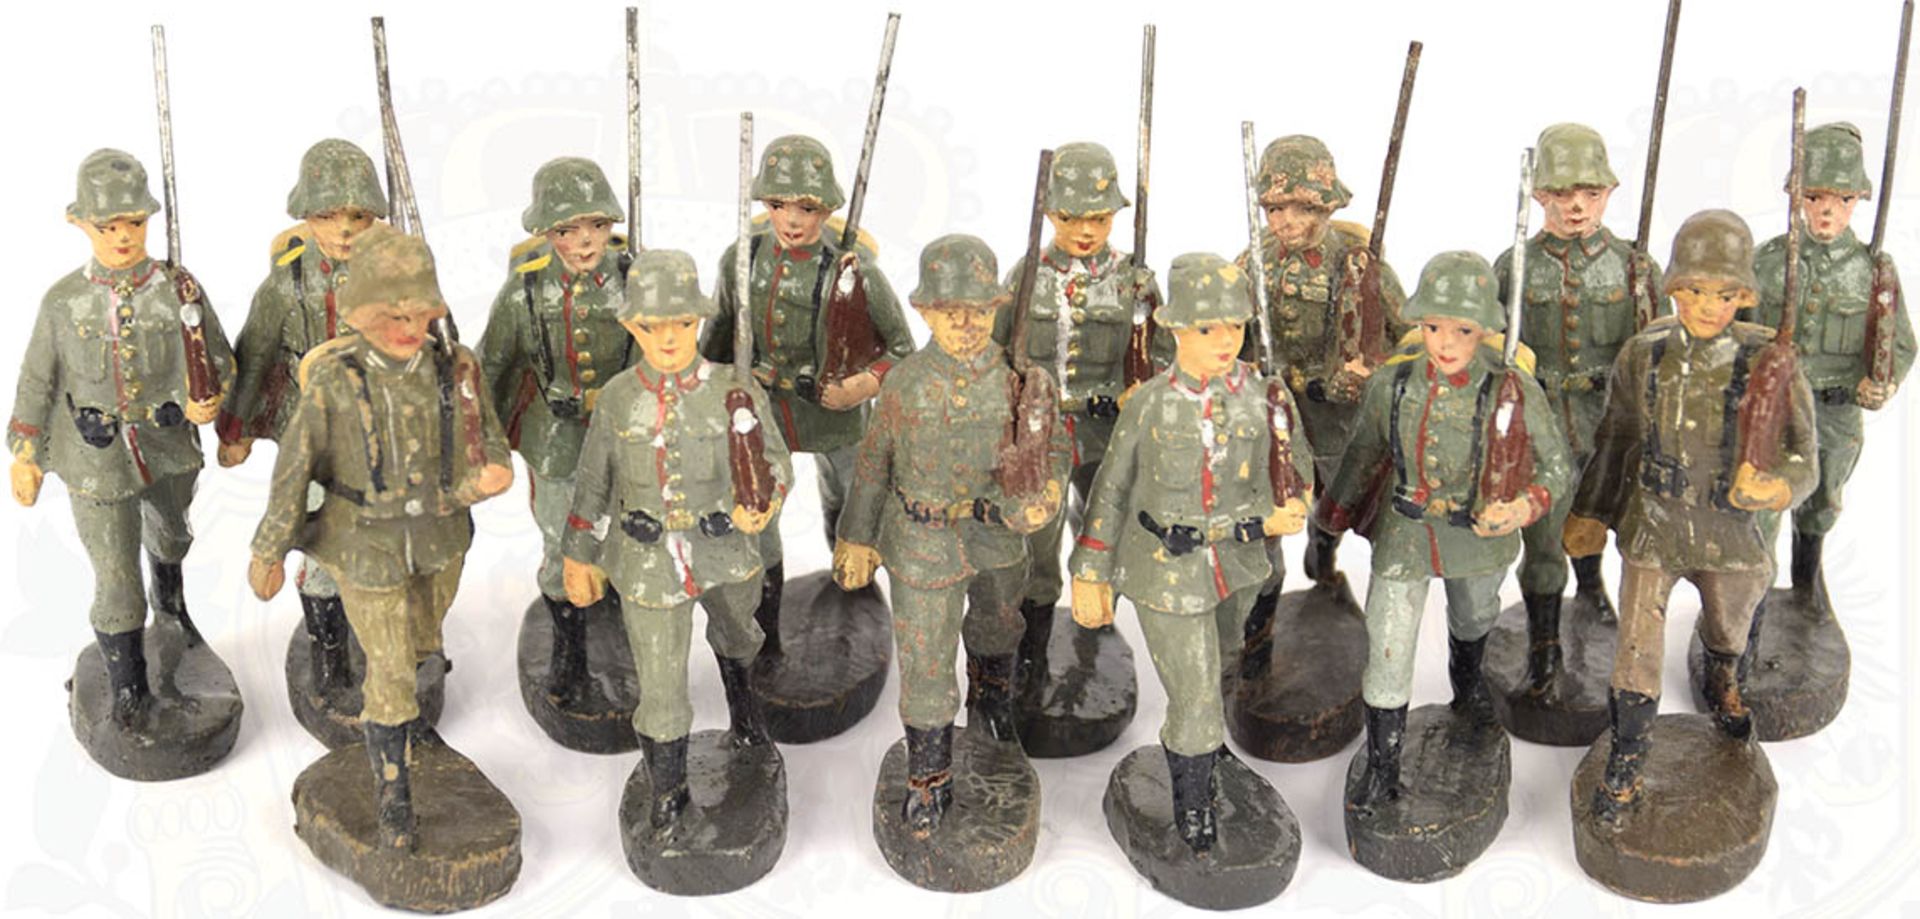 14 SOLDATEN DEUTSCHES HEER, um 1930-1933, Darstellung im Marsch m. geschultertem Gewehr, Herst. "